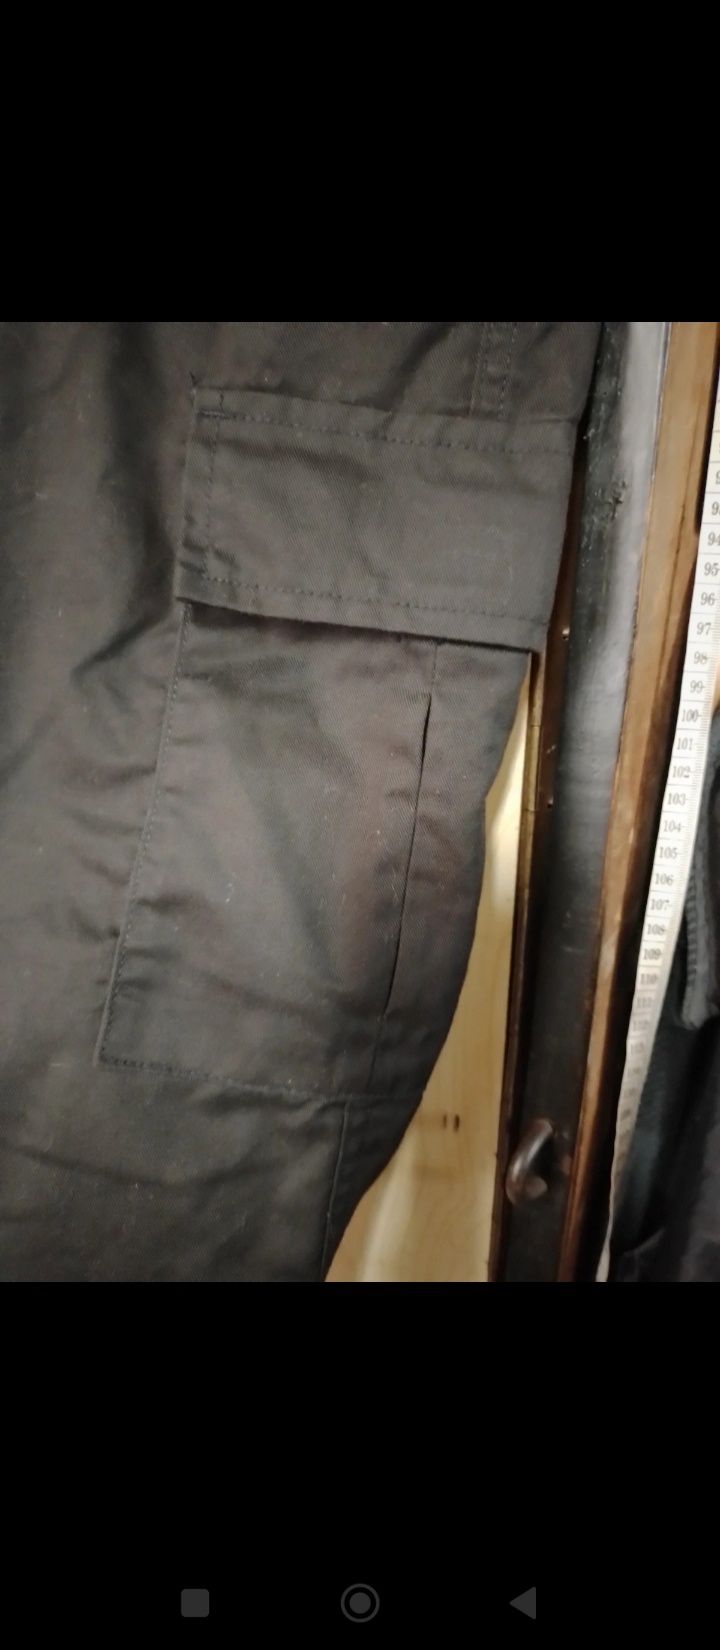 Spodnie bojówki uneek rozmiar 48